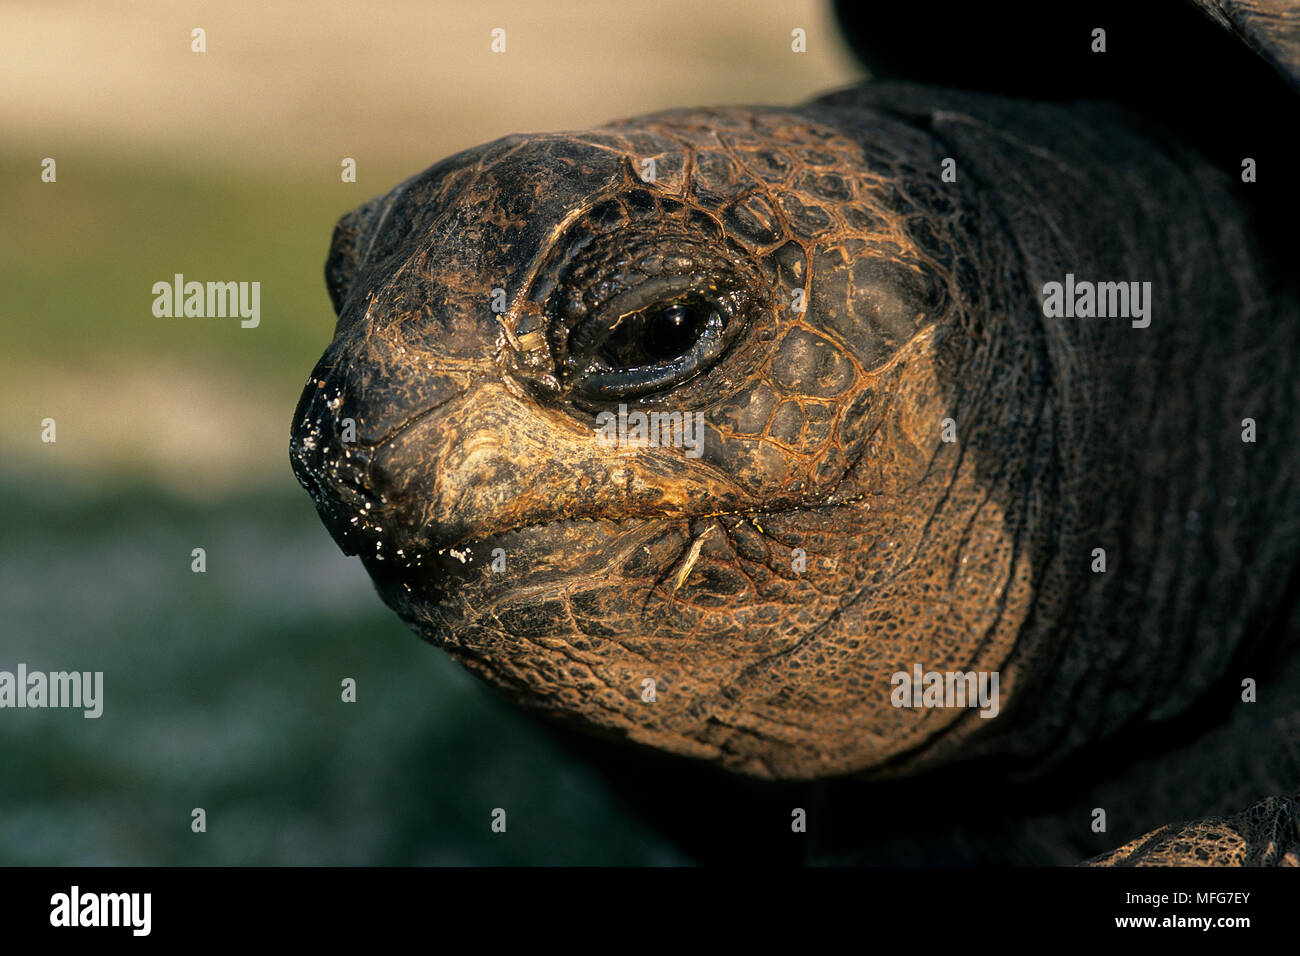 Ritratto di tartaruga gigante, Geochelone gigantea, Aldabra Atoll, patrimonio mondiale naturale, Seychelles, Oceano Indiano Data: 24.06.08 RIF: ZB777 1156 Foto Stock